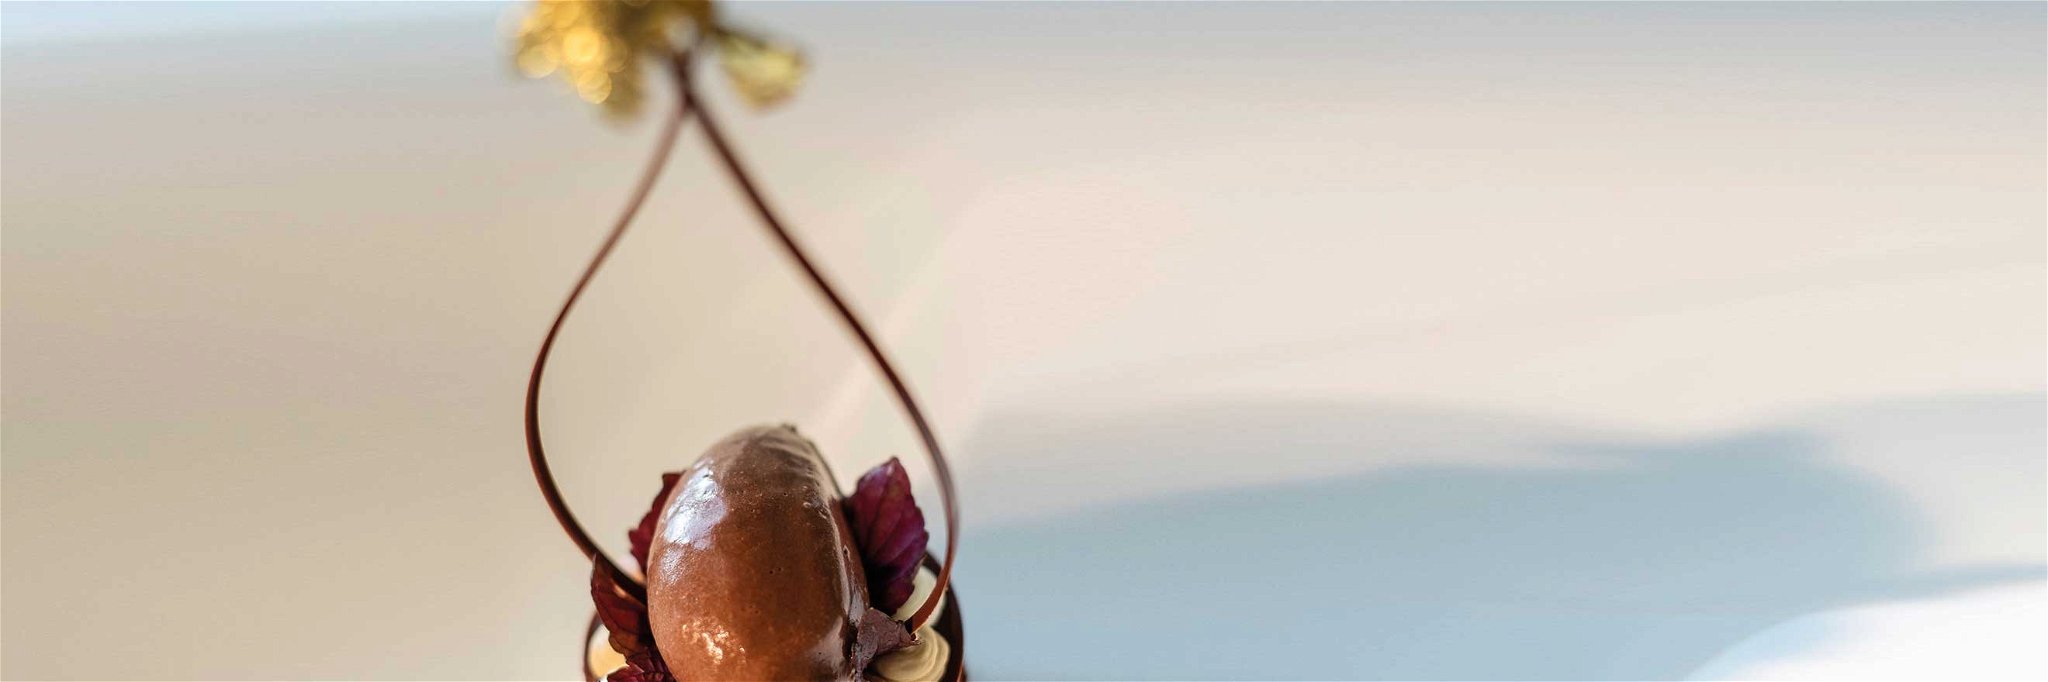 Süßes Kunstwerk aus »Jacobs Restaurant«: Törtchen von Araguani-Schokoladen.